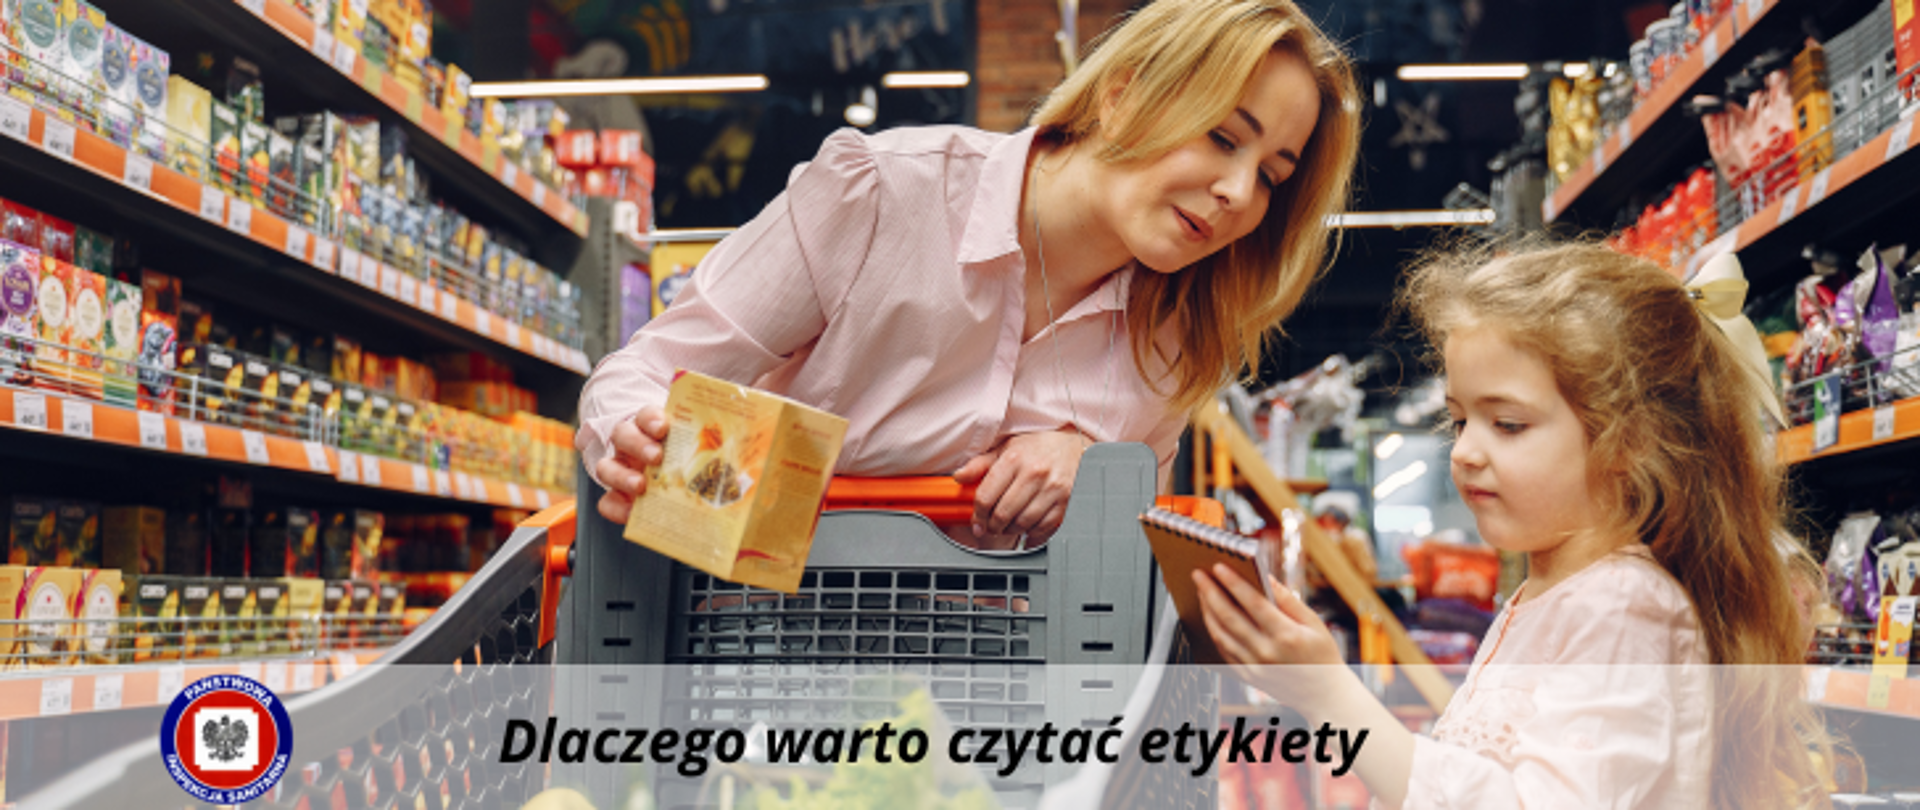 Mama z córką patrzą wspólnie na etykiety podczas zakupów w markecie na tle pełnych półek sklepowych. Poniżej na jasnym półprzezroczystym pasku ciemny napis Dlaczego warto czytać etykiety. Po jego lewej logo Państwowej Inspekcji Sanitarnej.